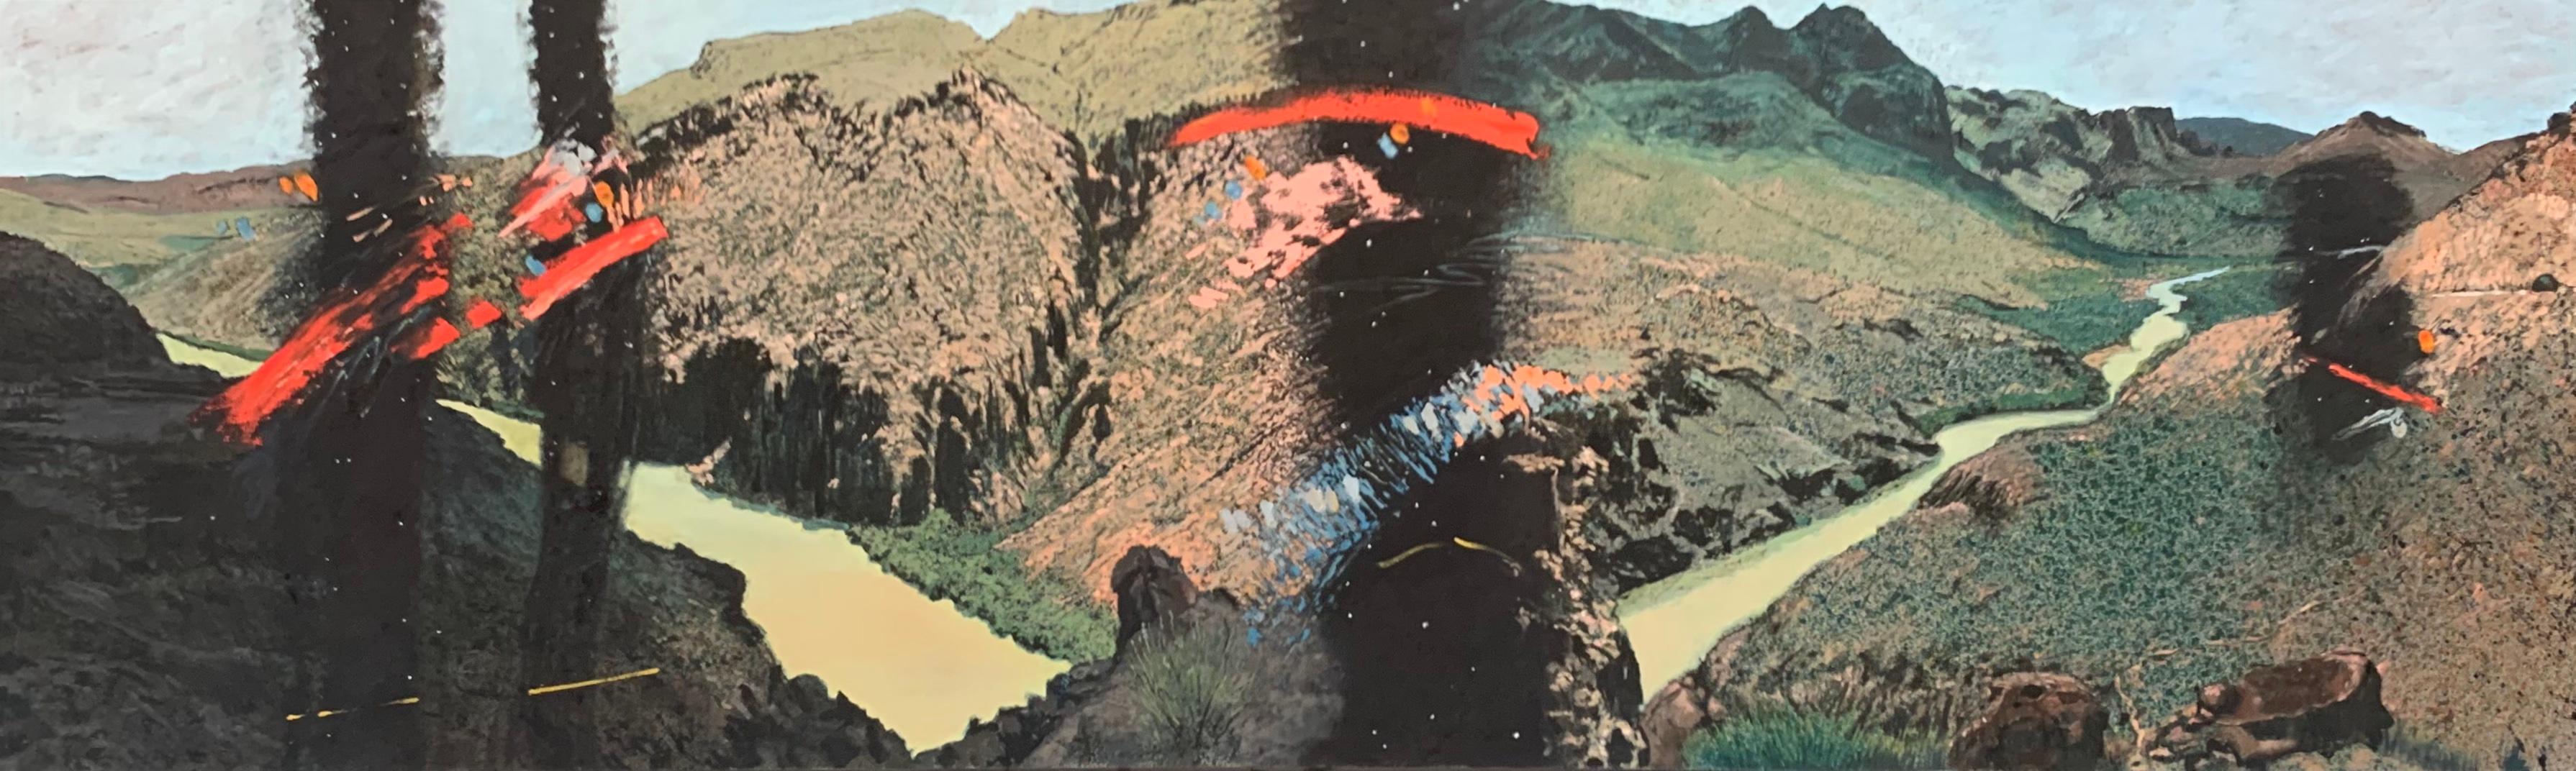 Landscape Painting Jim Woodson - Peinture à l'huile abstraite de montagne